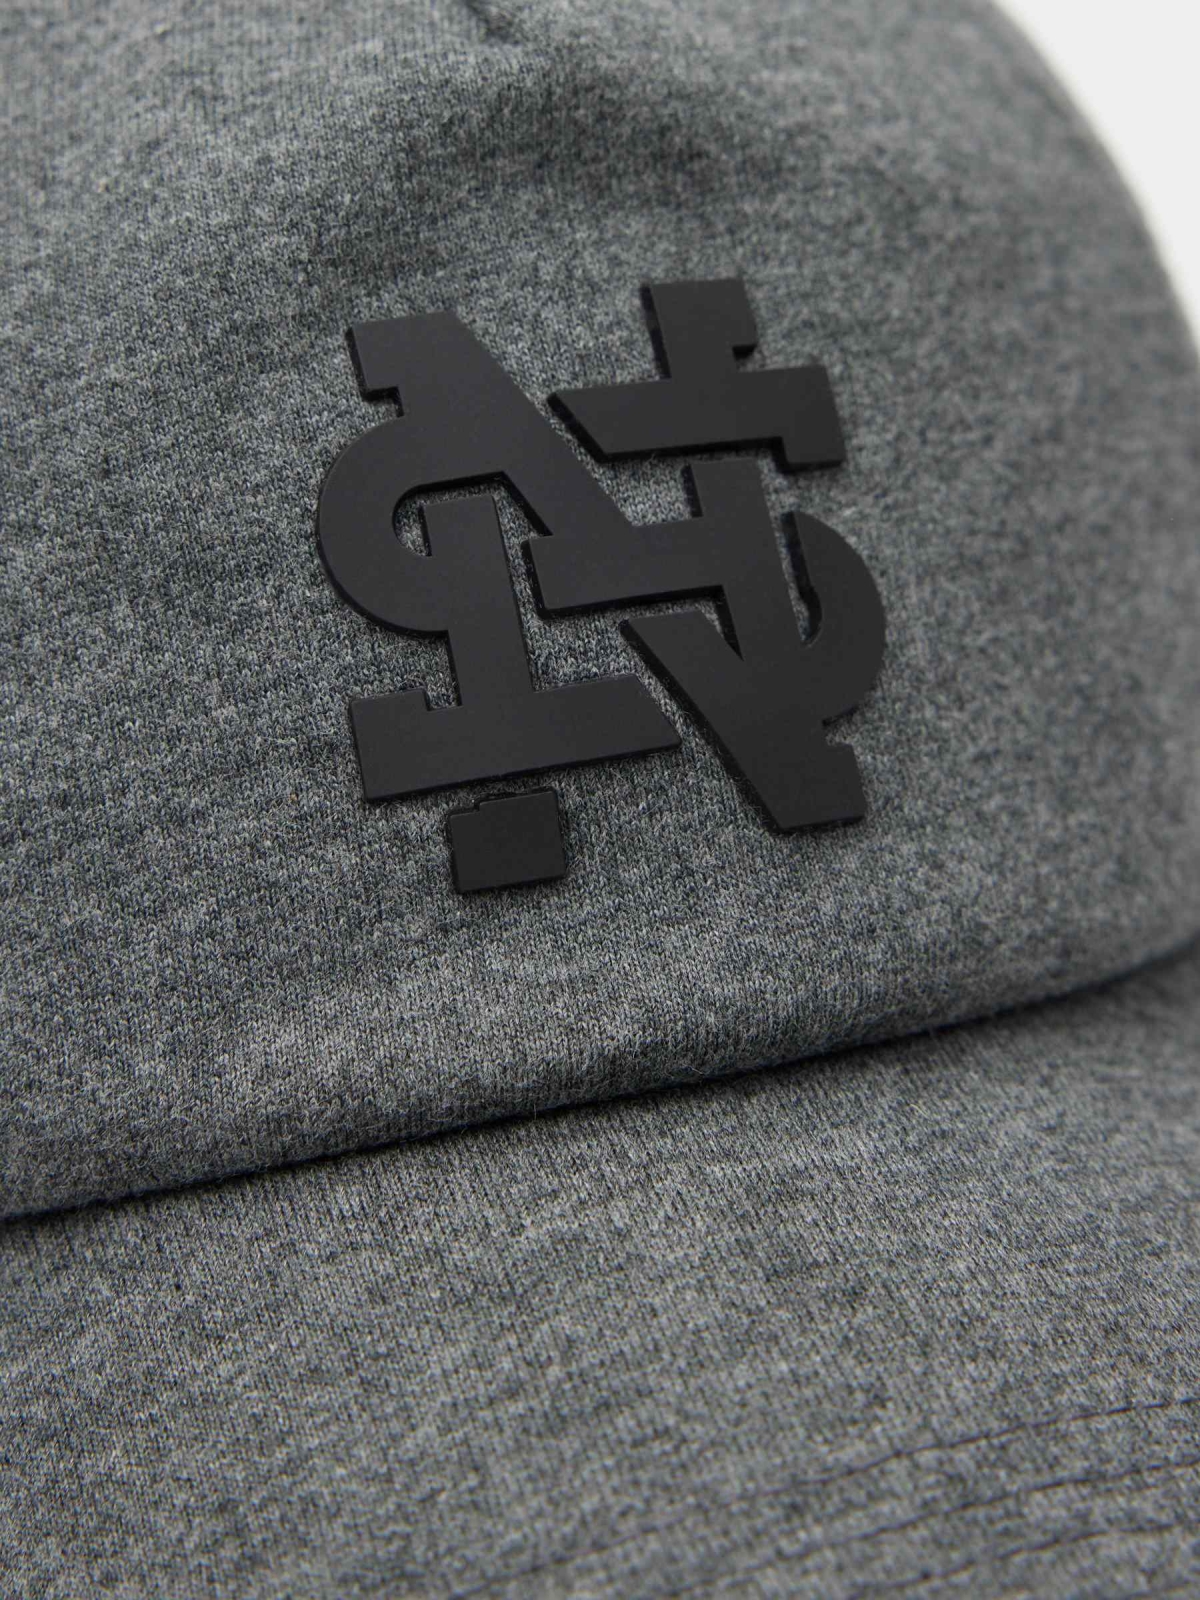 Baseball cap with logo melange grey detail view